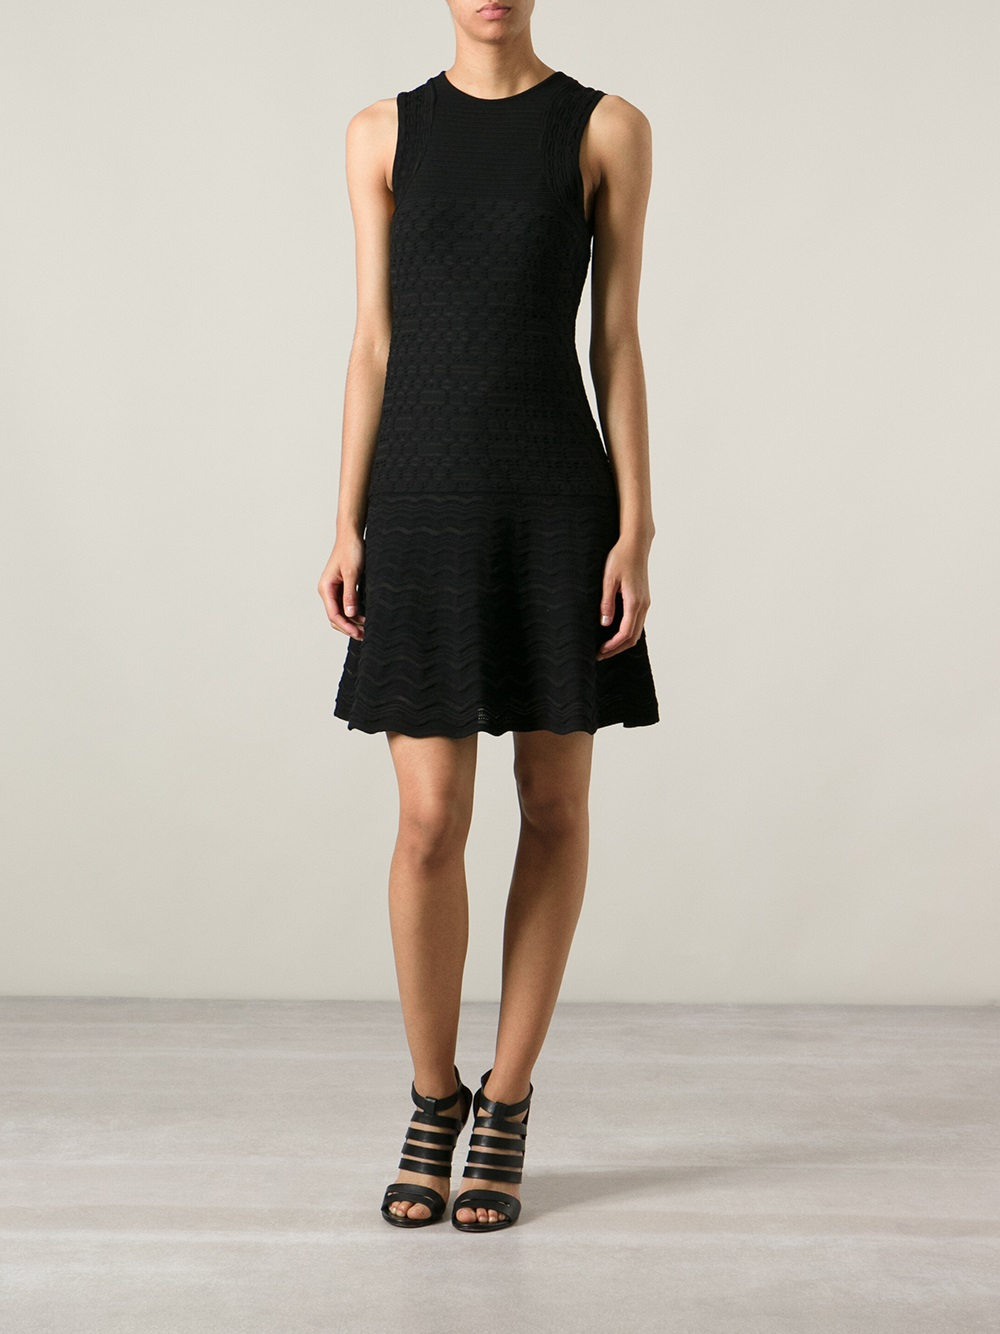 Lyst - M Missoni Honeycomb Knit Dress in Black